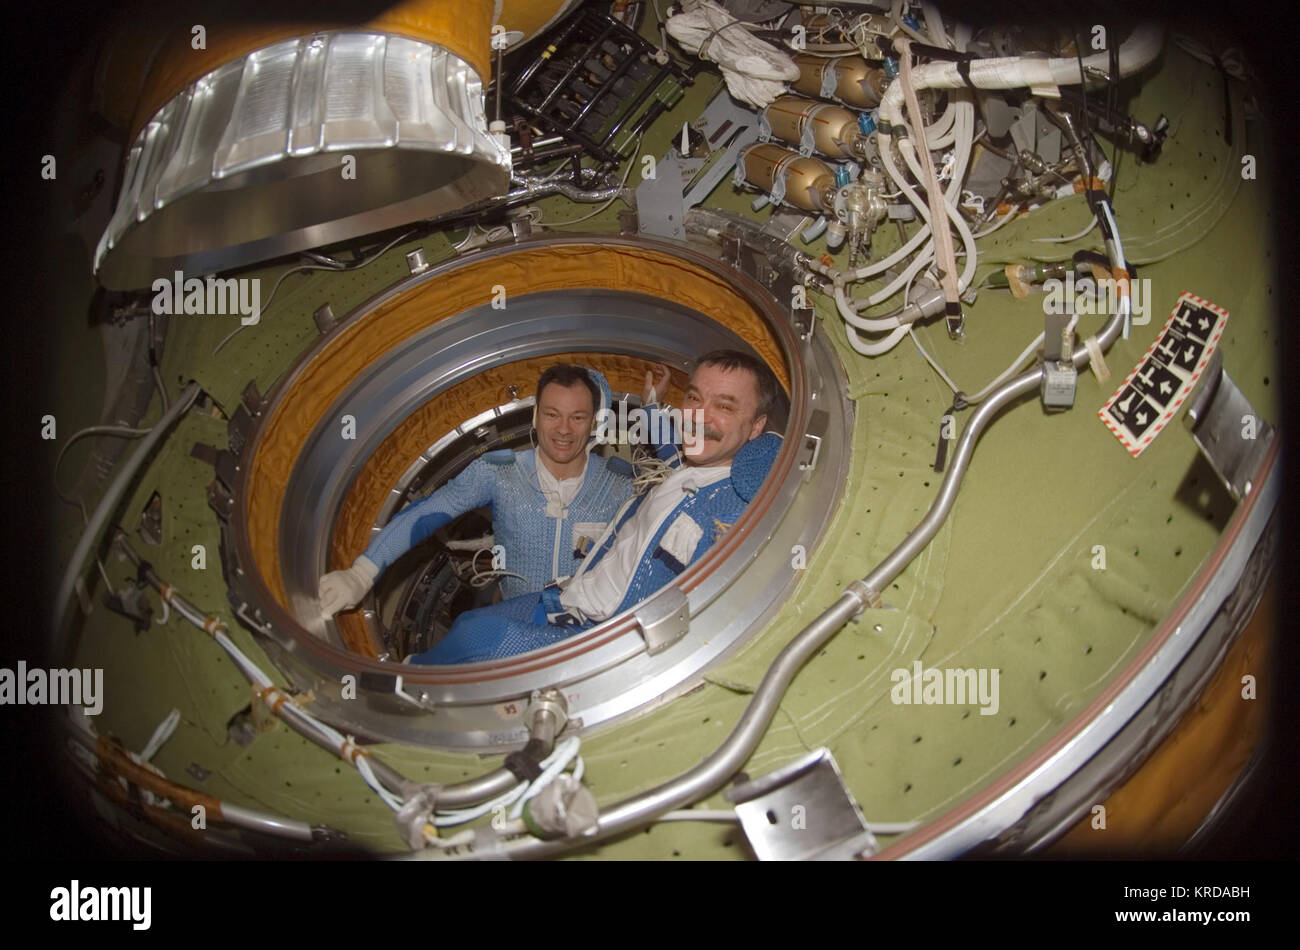 Michael E. Lopez-Alegria y Mikhail Tyurin en la Estación Espacial Internacional del compartimiento de acoplamiento Pirs Foto de stock